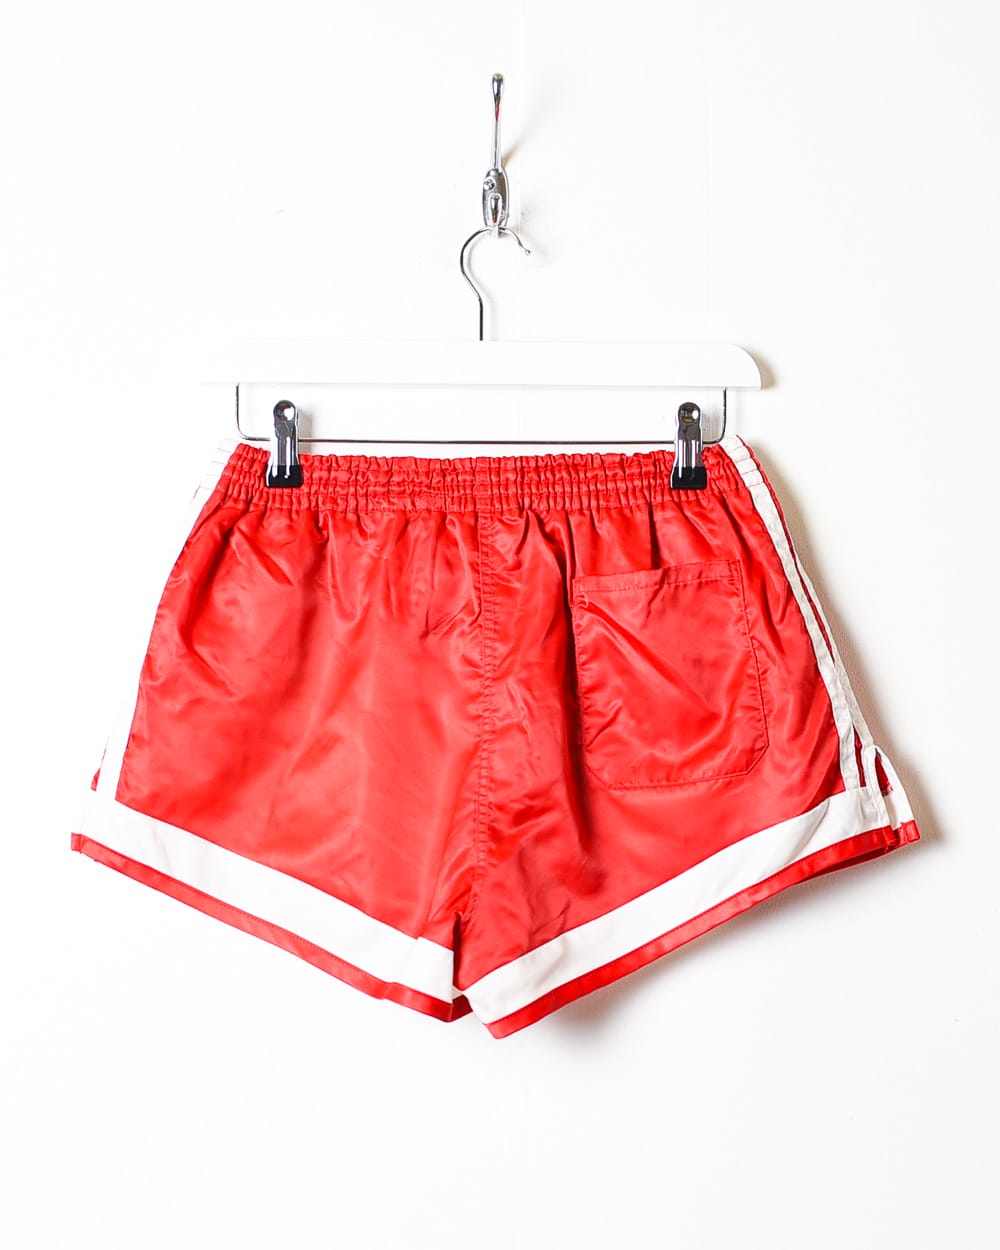 Red Adidas Short Shorts - Small